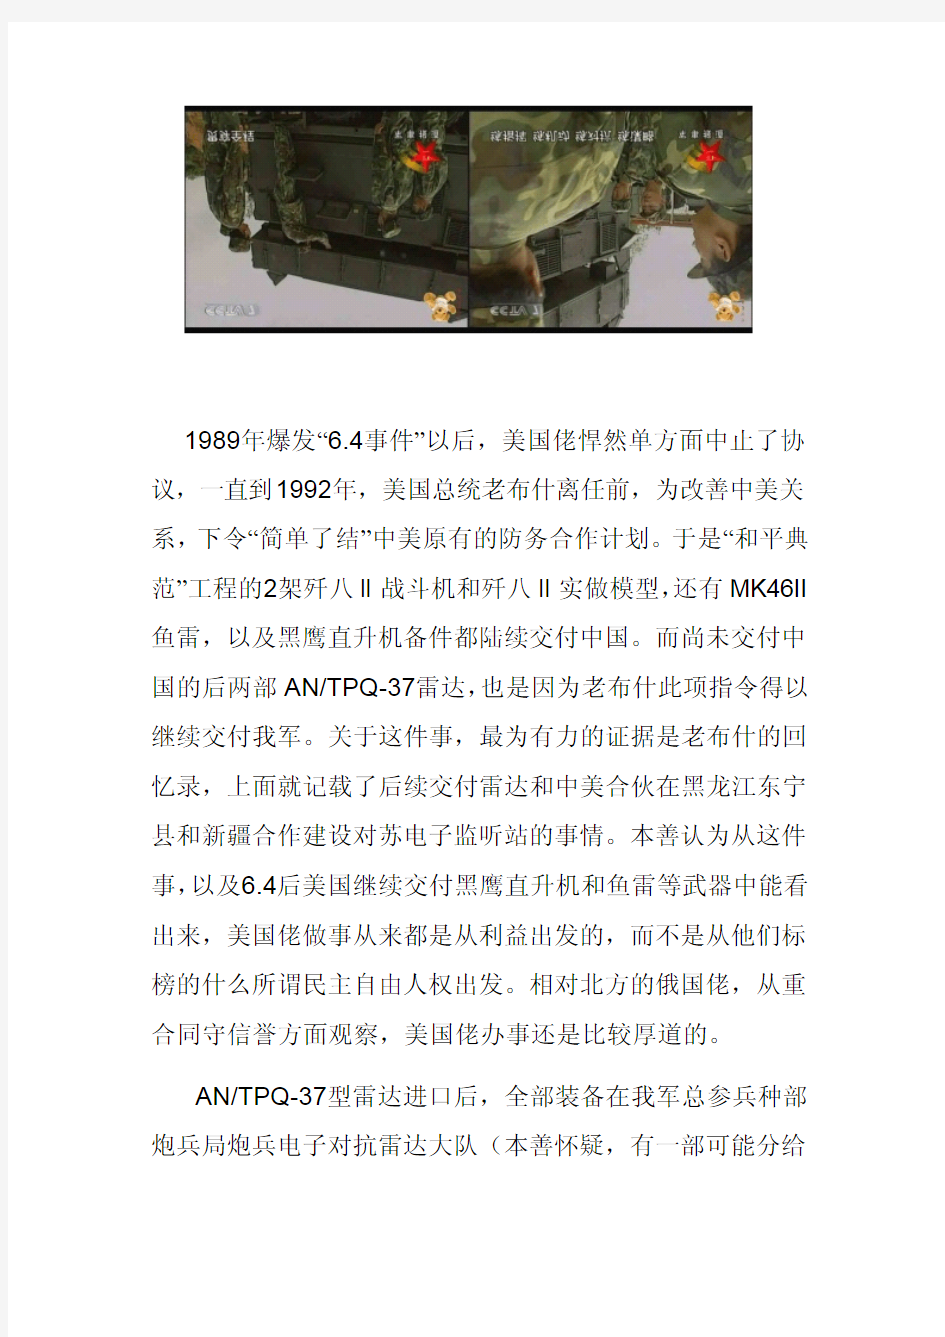 中国进口美制炮兵侦察雷达那点事